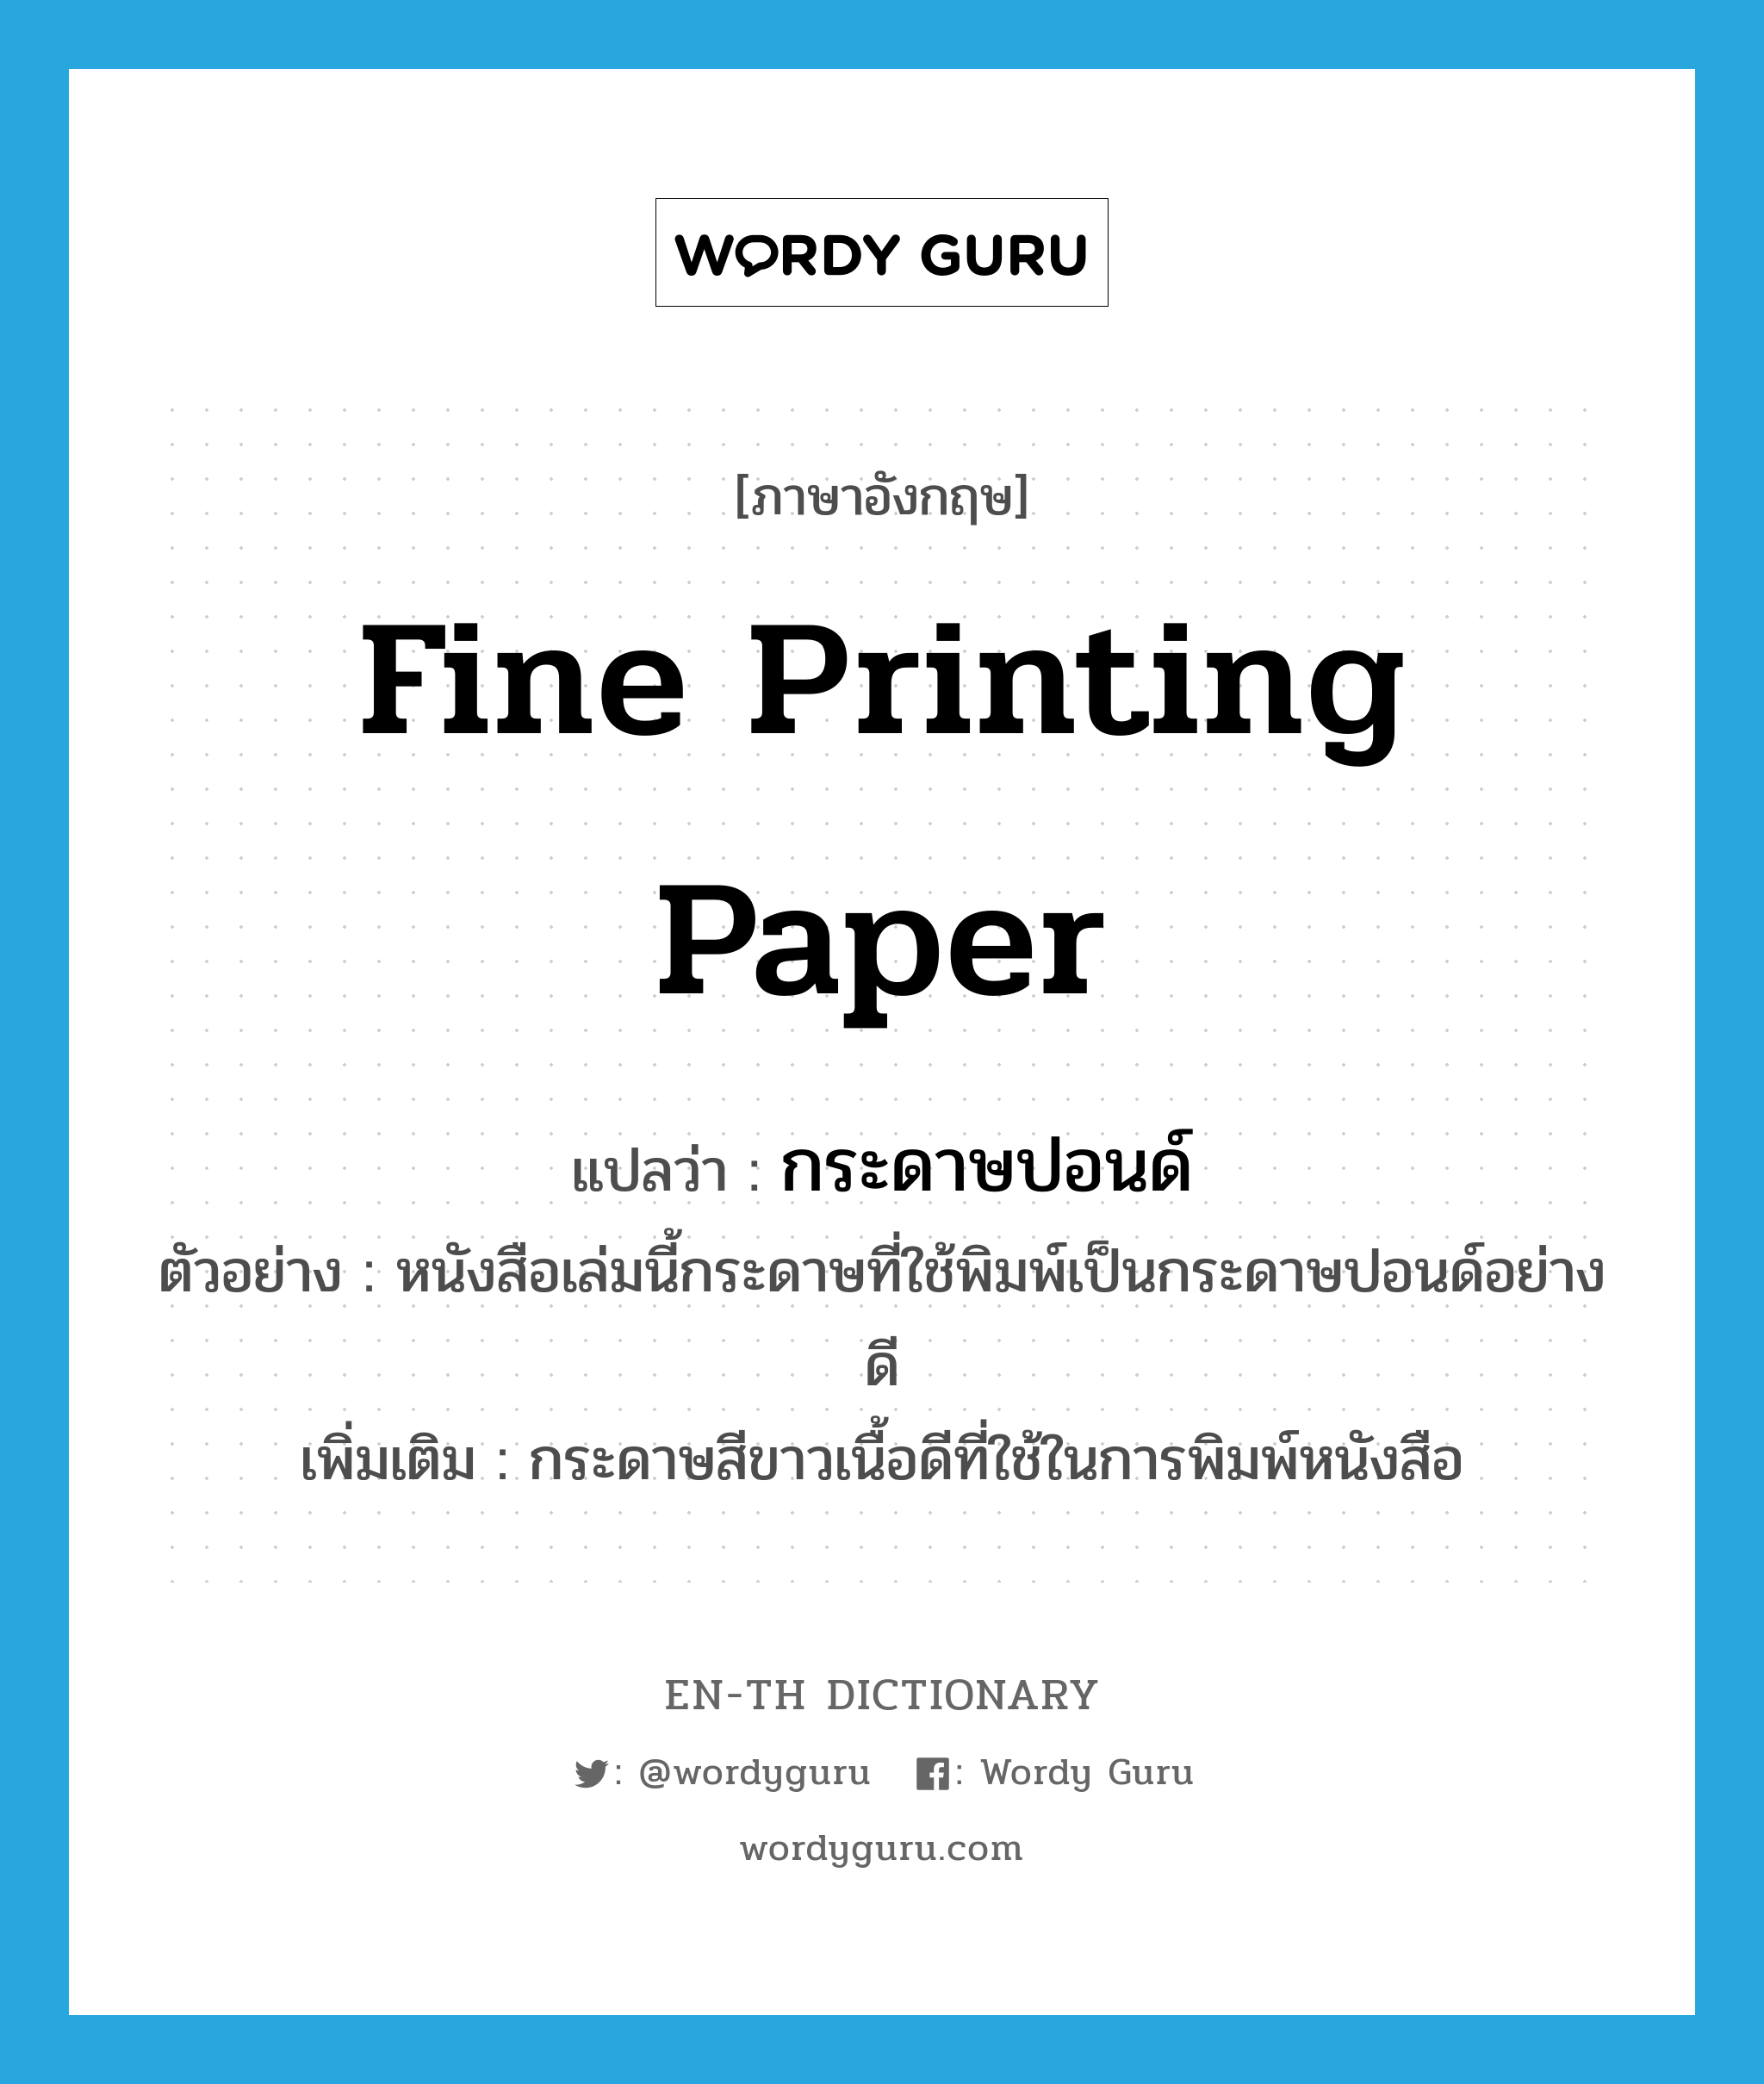 fine printing paper แปลว่า?, คำศัพท์ภาษาอังกฤษ fine printing paper แปลว่า กระดาษปอนด์ ประเภท N ตัวอย่าง หนังสือเล่มนี้กระดาษที่ใช้พิมพ์เป็นกระดาษปอนด์อย่างดี เพิ่มเติม กระดาษสีขาวเนื้อดีที่ใช้ในการพิมพ์หนังสือ หมวด N